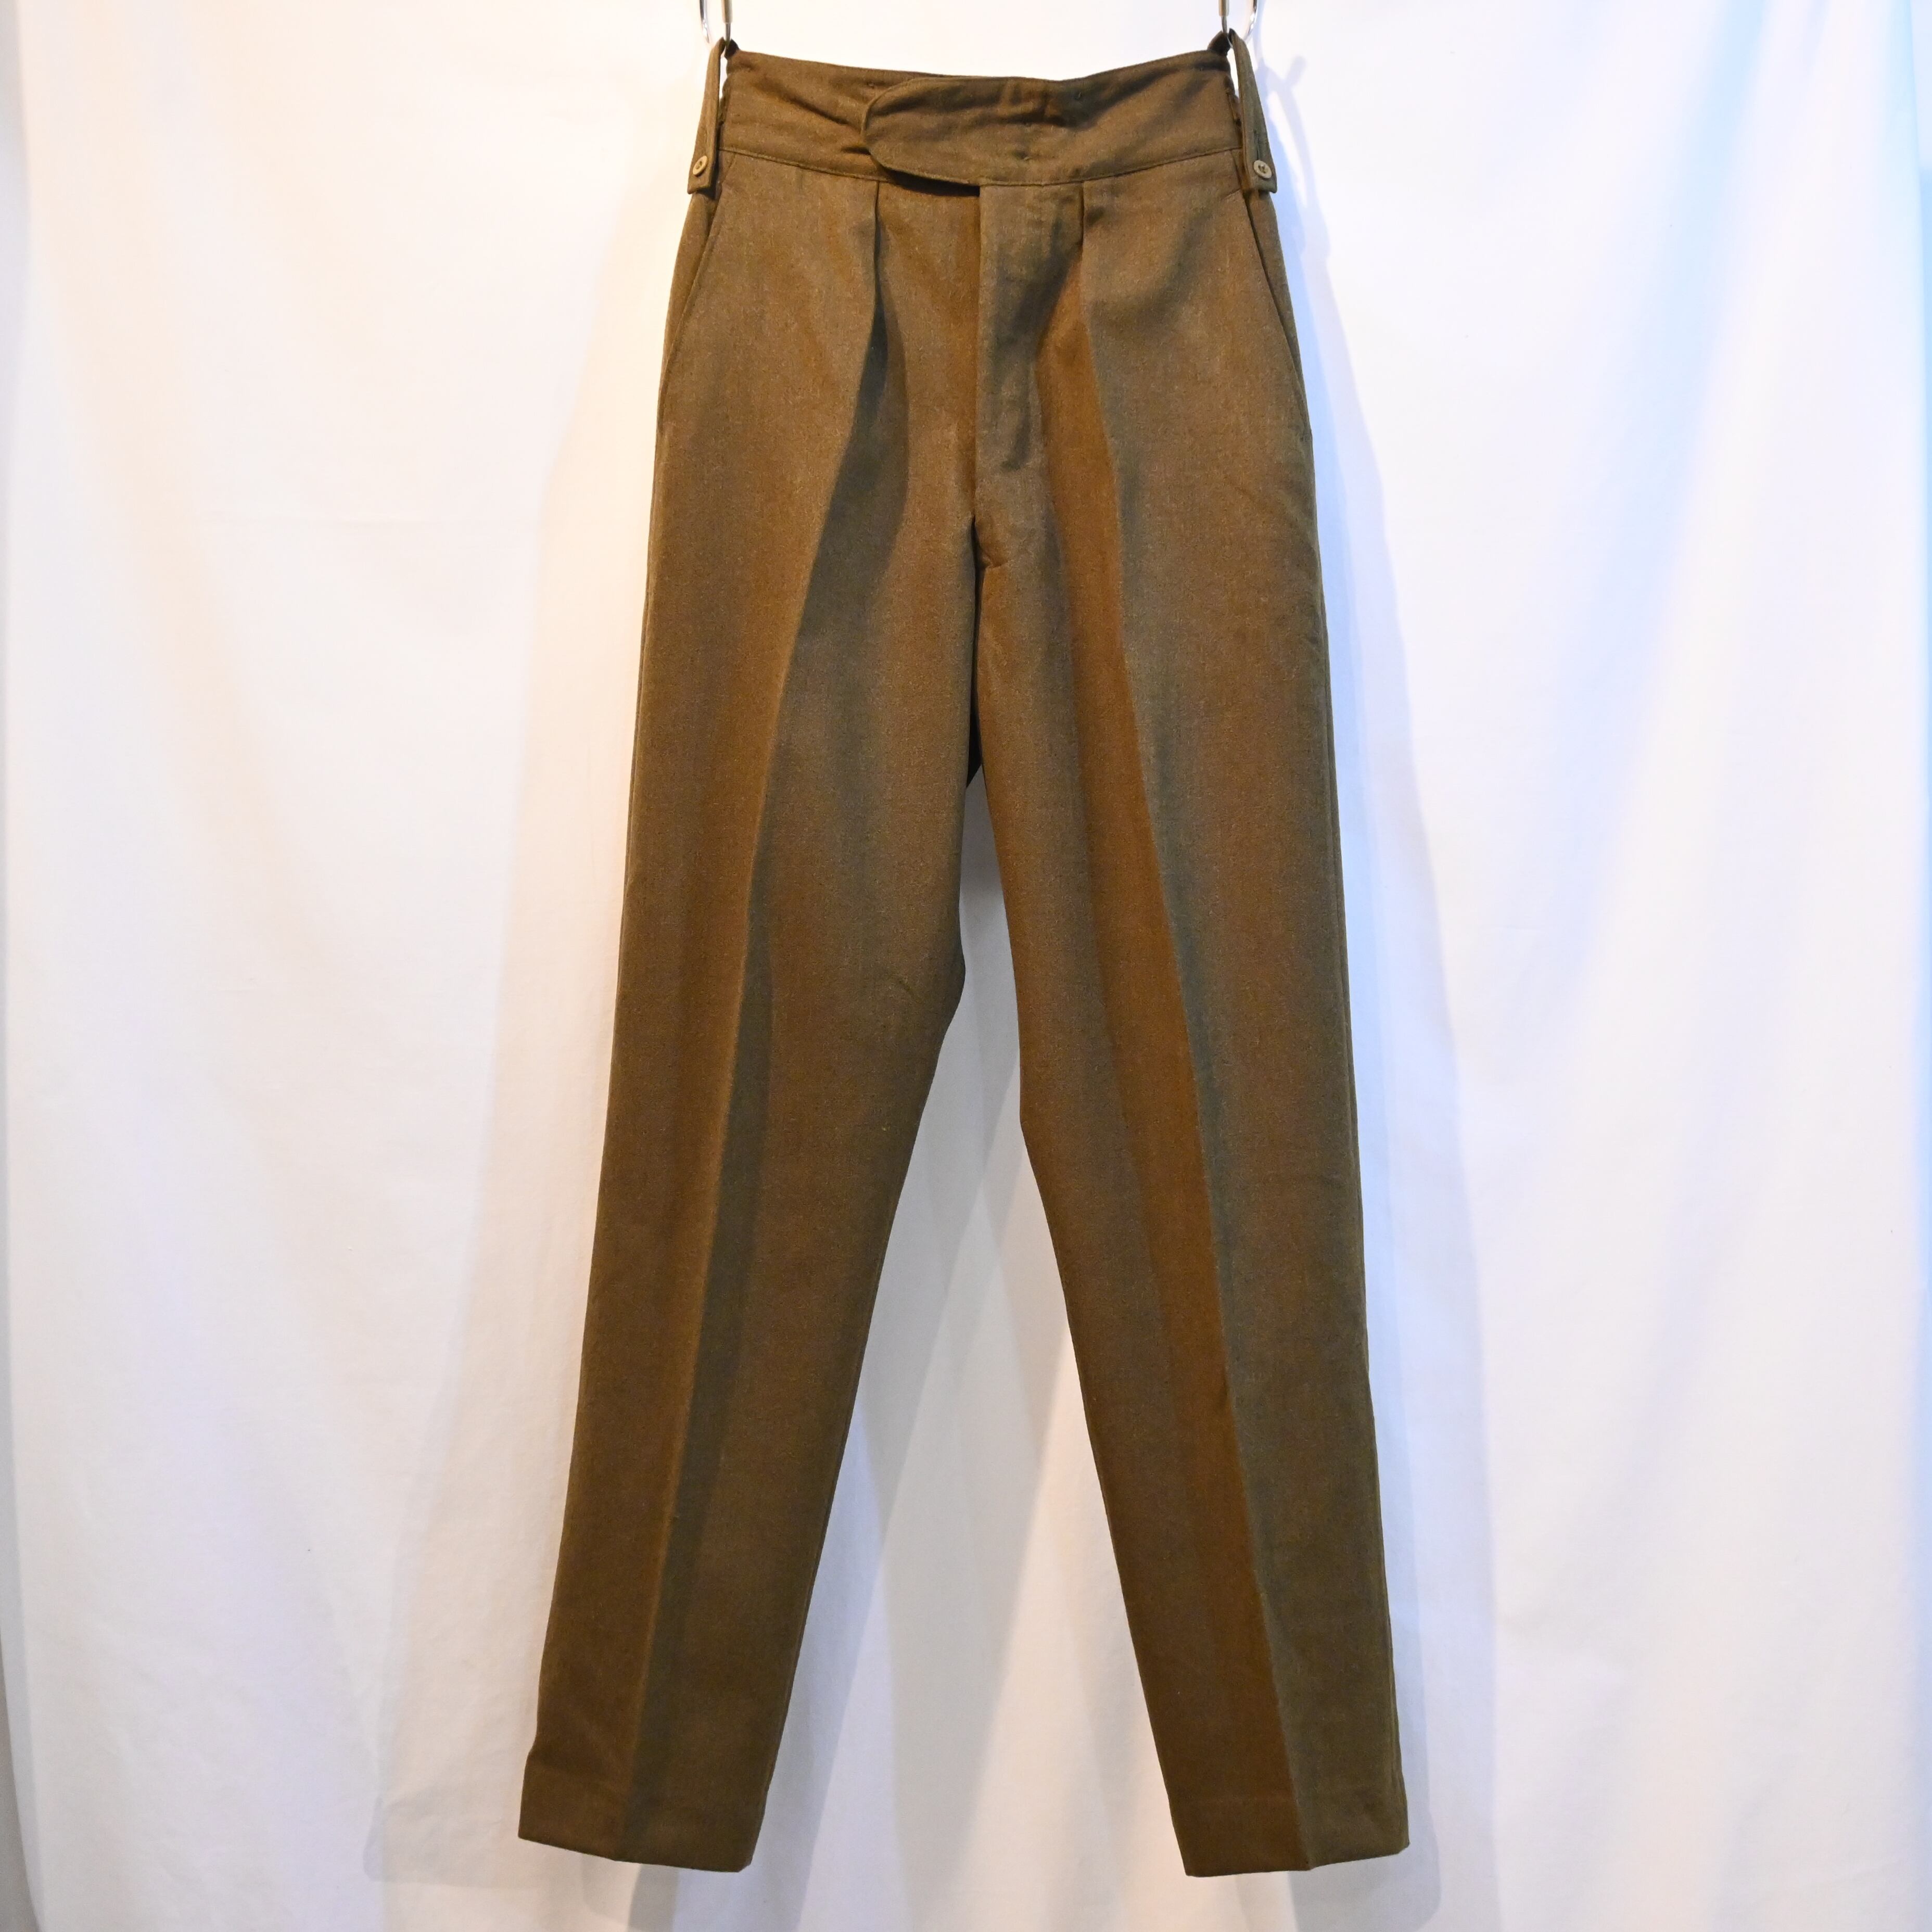 60s イギリス軍 No.2 Dress Trousers - rehda.com